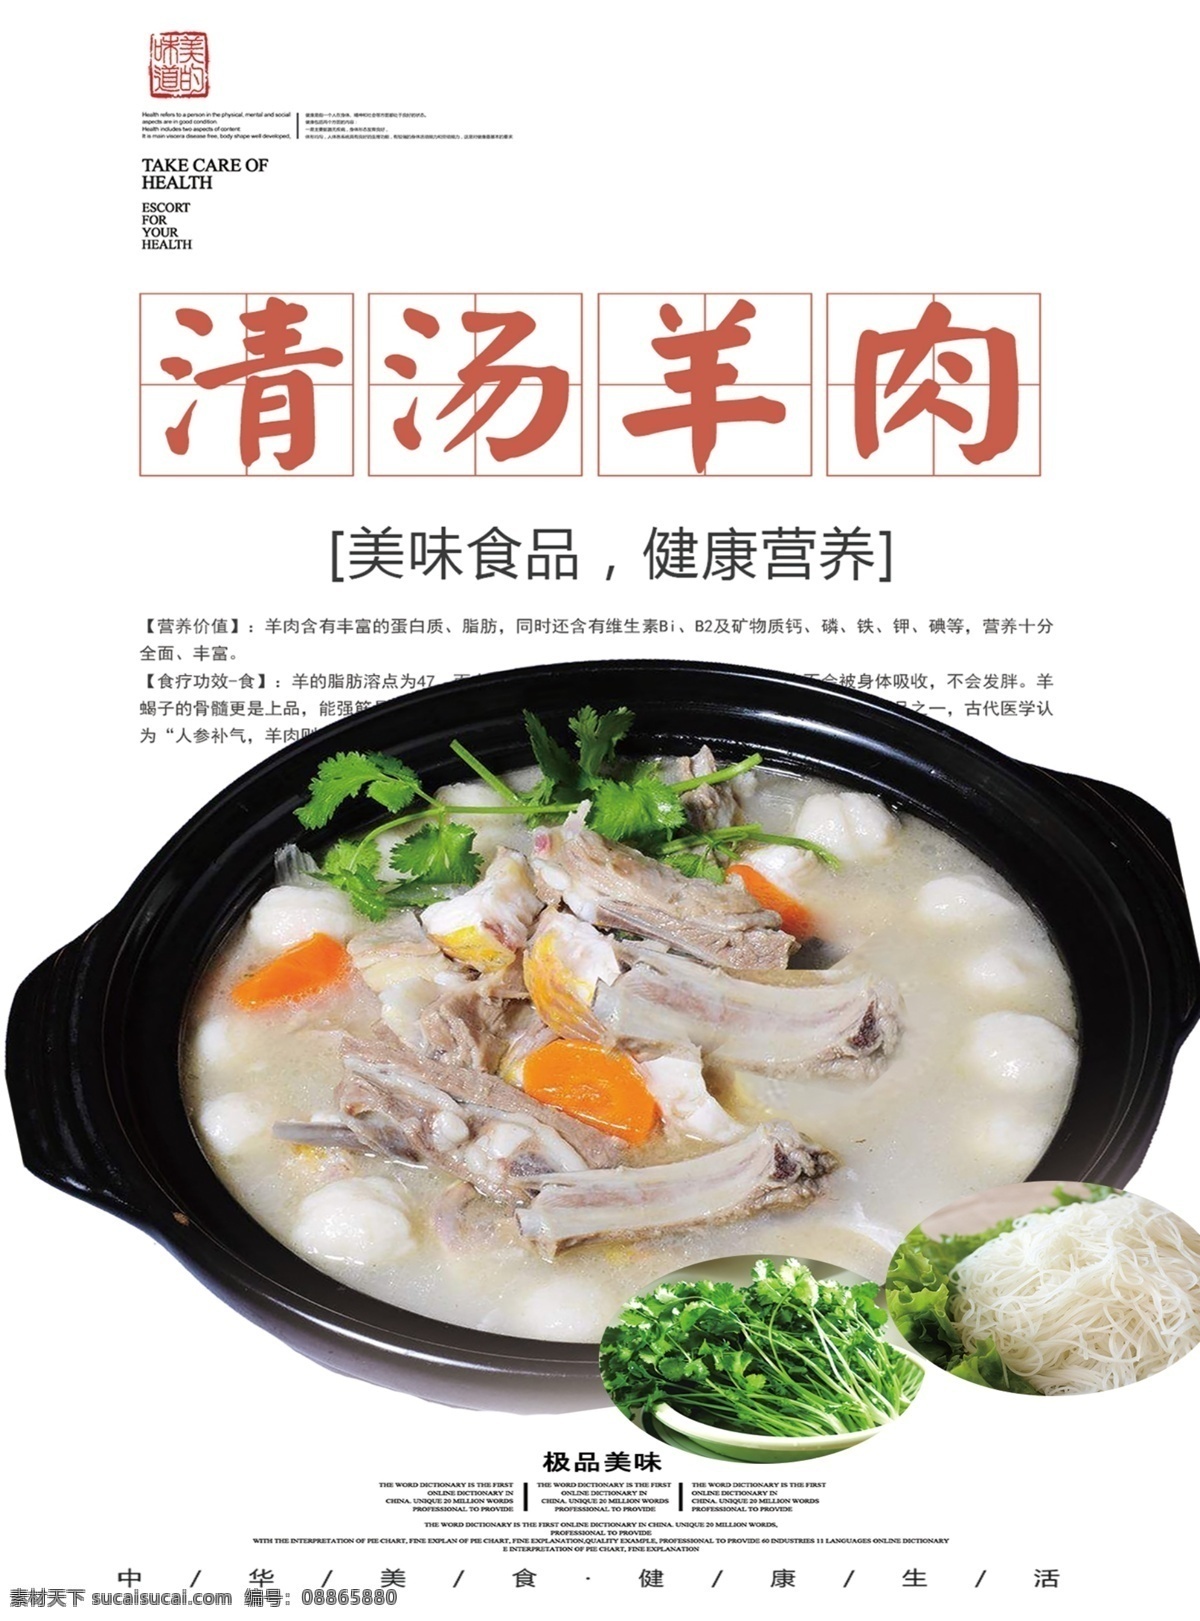 清汤羊肉 菜品写真 菜单 海报 宣传画